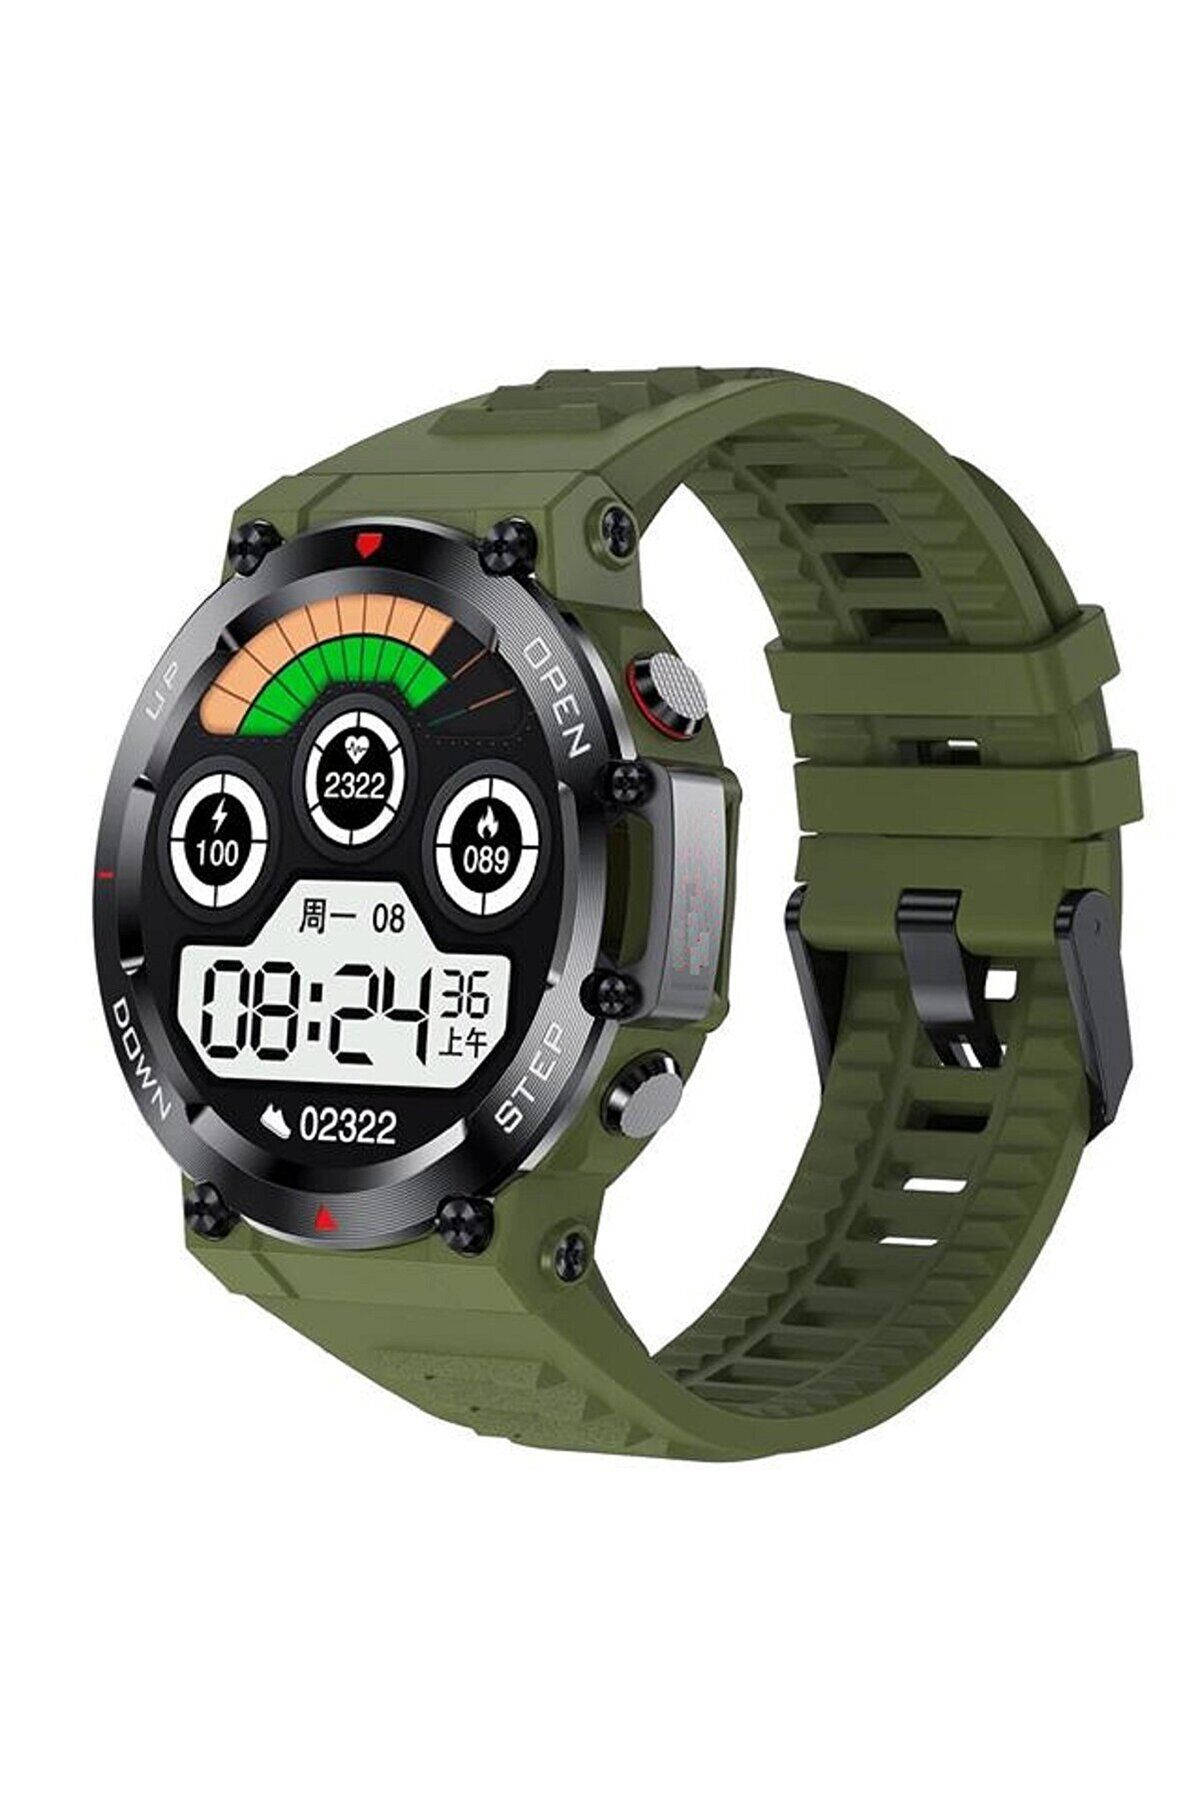 tekno yeb ZW25 Watch Pro Akıllı Saat, Sporcu, İzci-Dağcı-Askeri Saat, Suya Dayanıklı